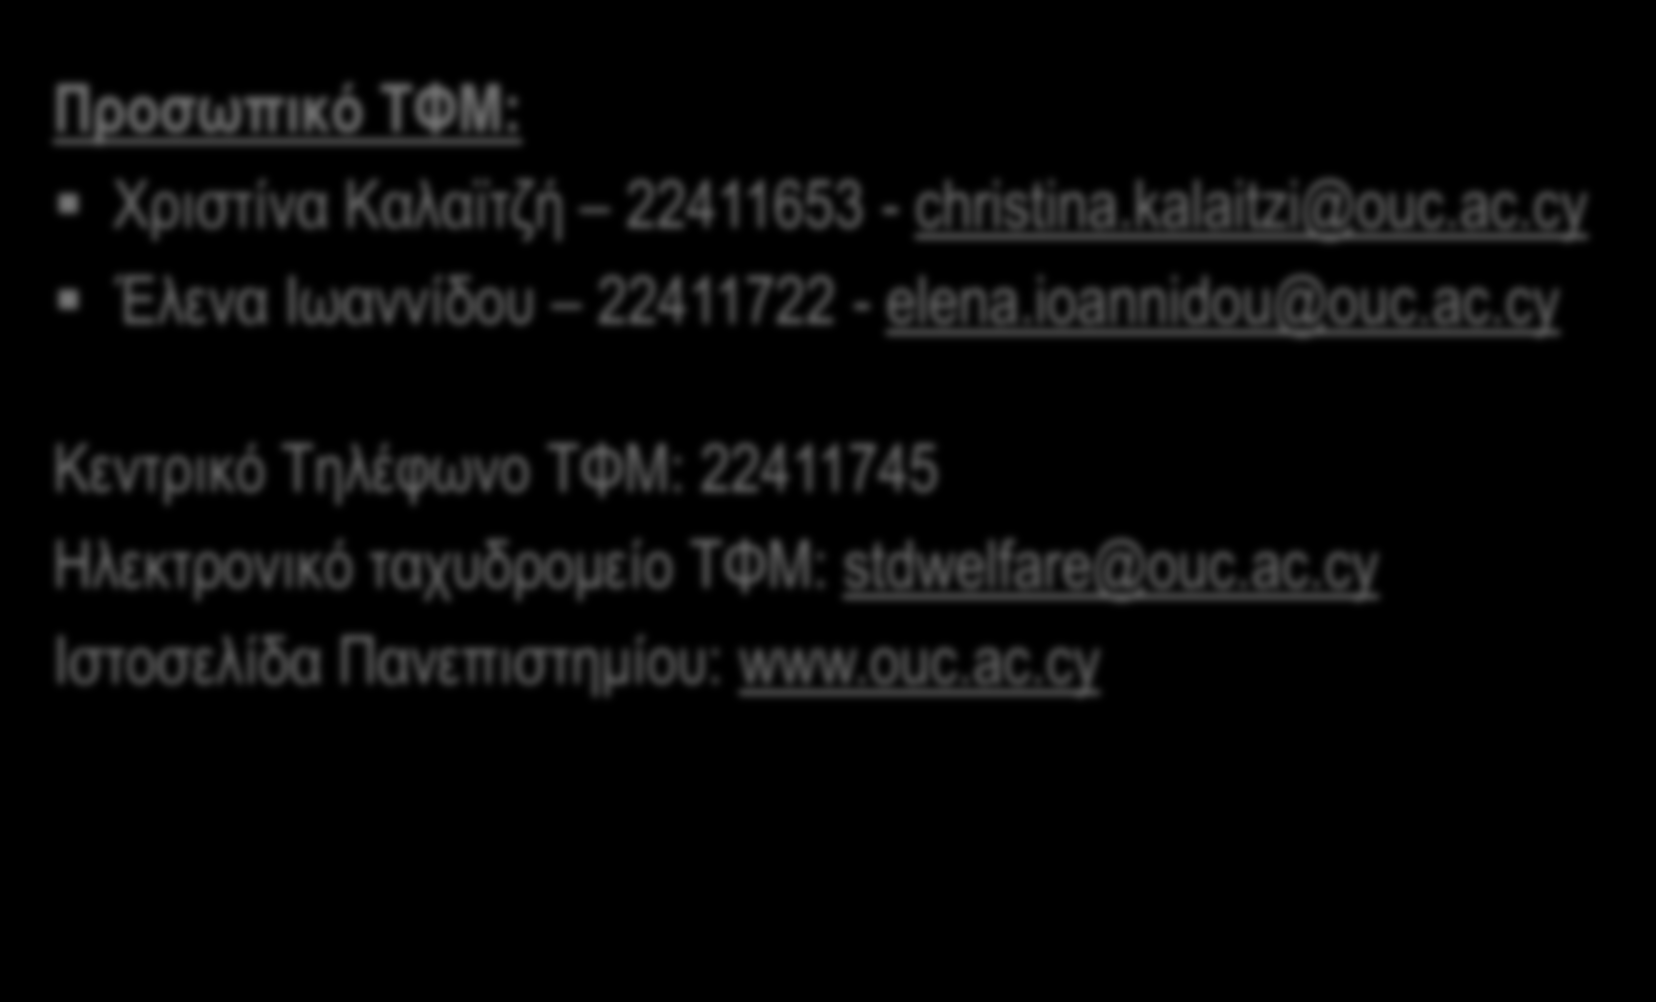 Στοιχεία Επικοινωνίας Προσωπικό ΤΦΜ: Χριστίνα Καλαϊτζή 22411653 - christina.kalaitzi@ouc.ac.cy Έλενα Ιωαννίδου 22411722 - elena.